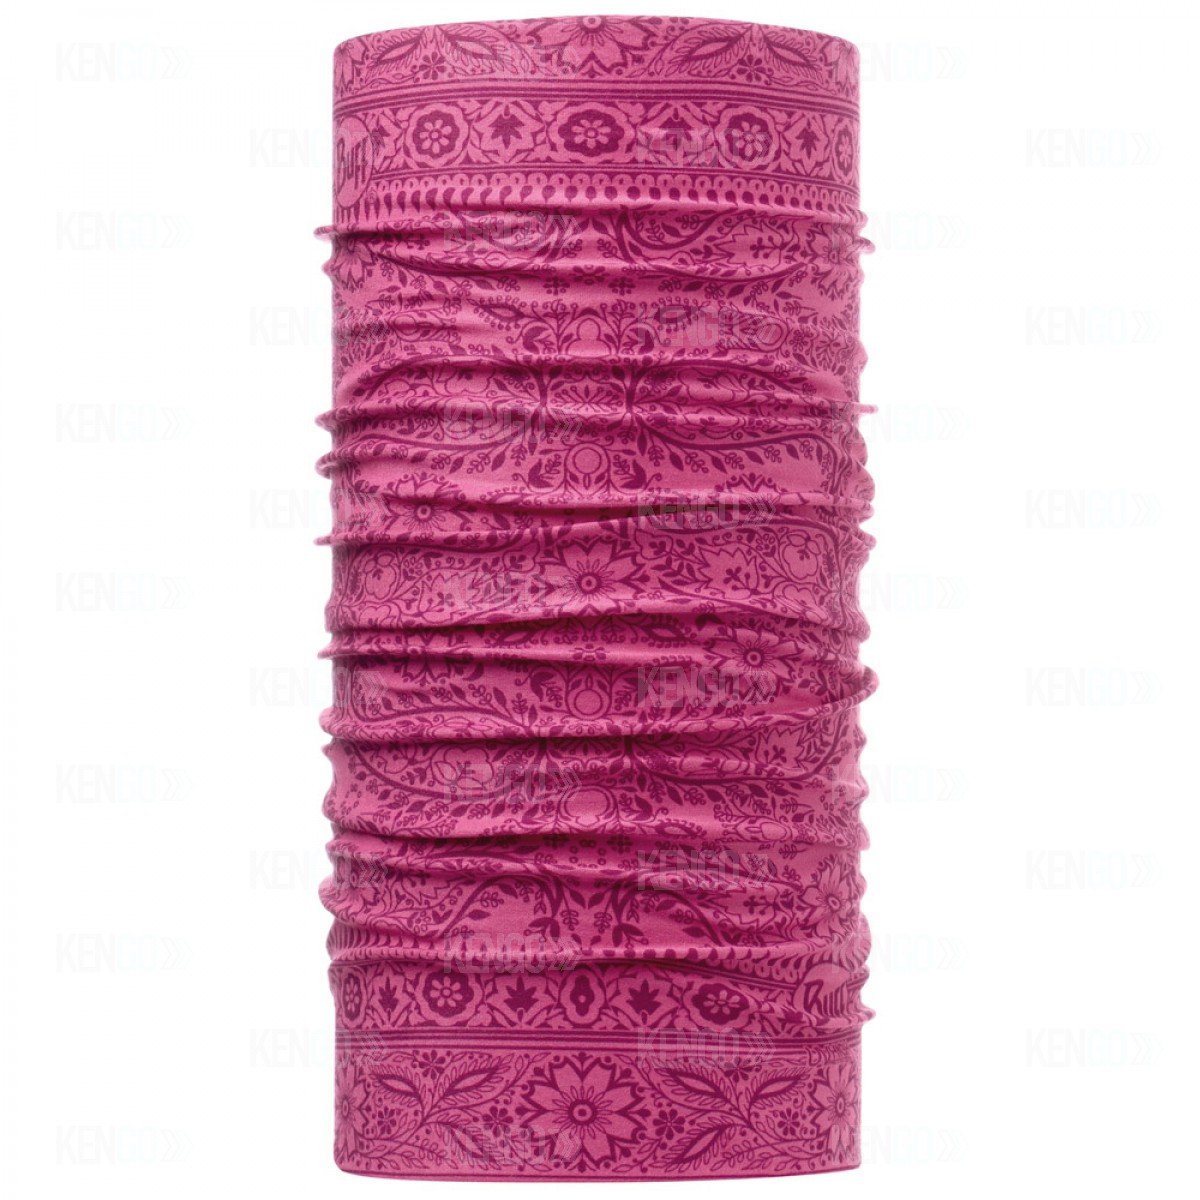 Велобандана BUFF Active HIGH UV BUFF KASPERLI, см: 53cm/62cm, розовая, 108588.00 велошапка buff microfiber